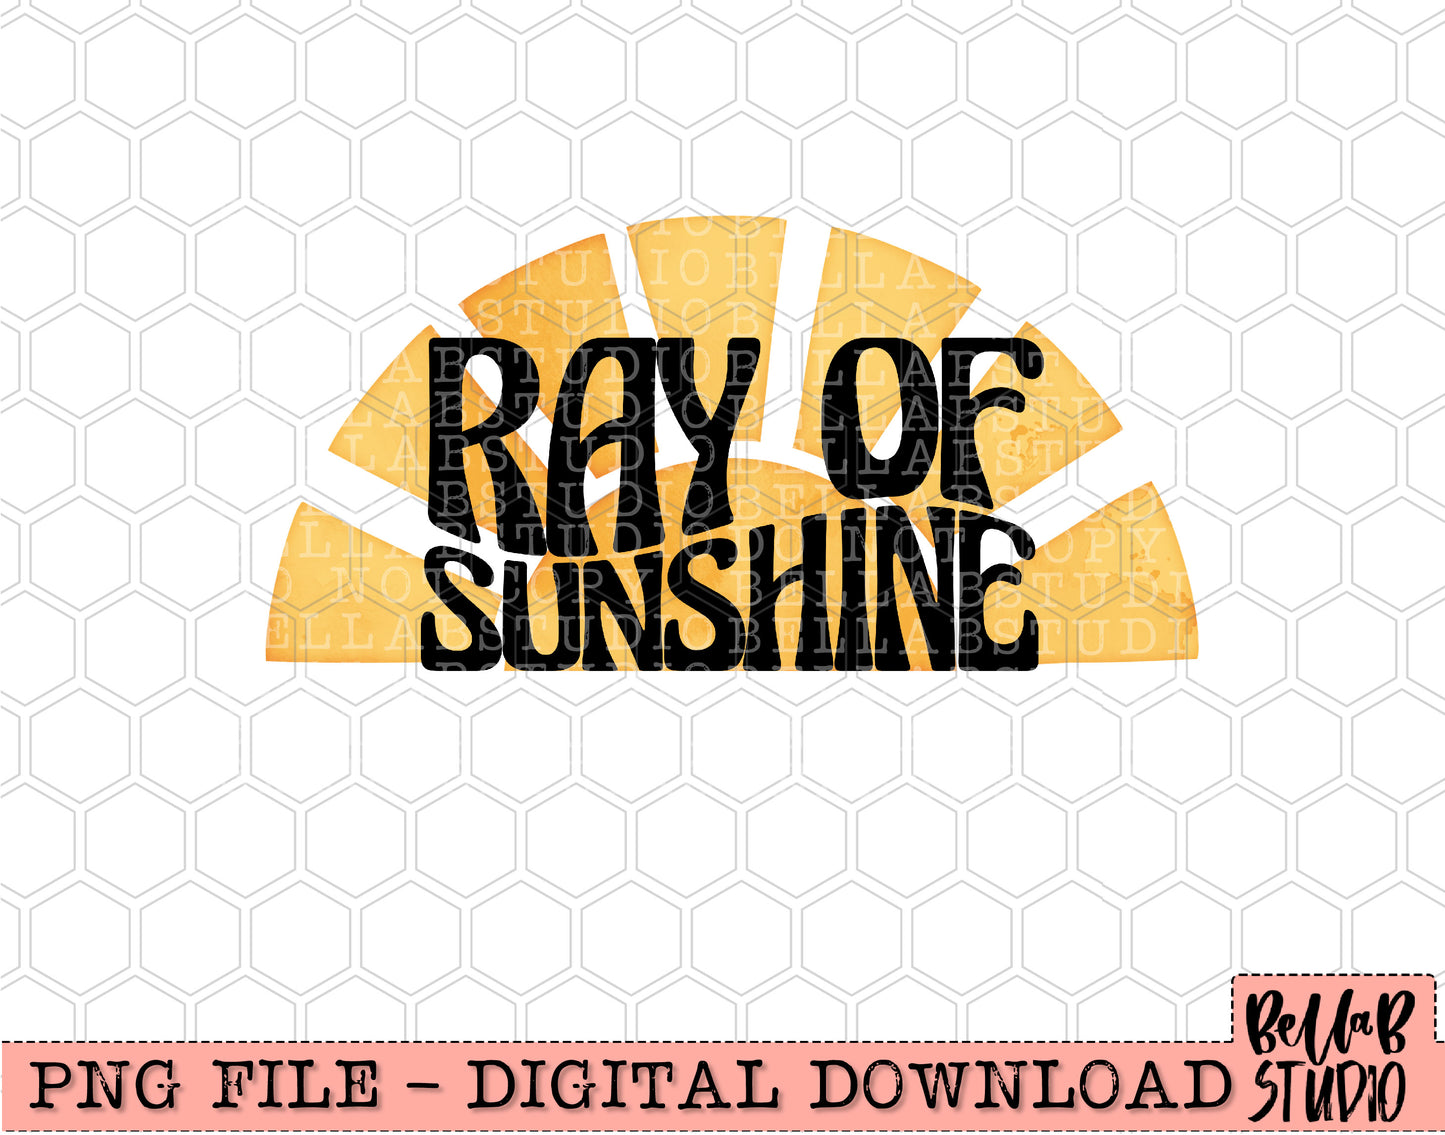 Ray Of Sunshine Sublimation Design